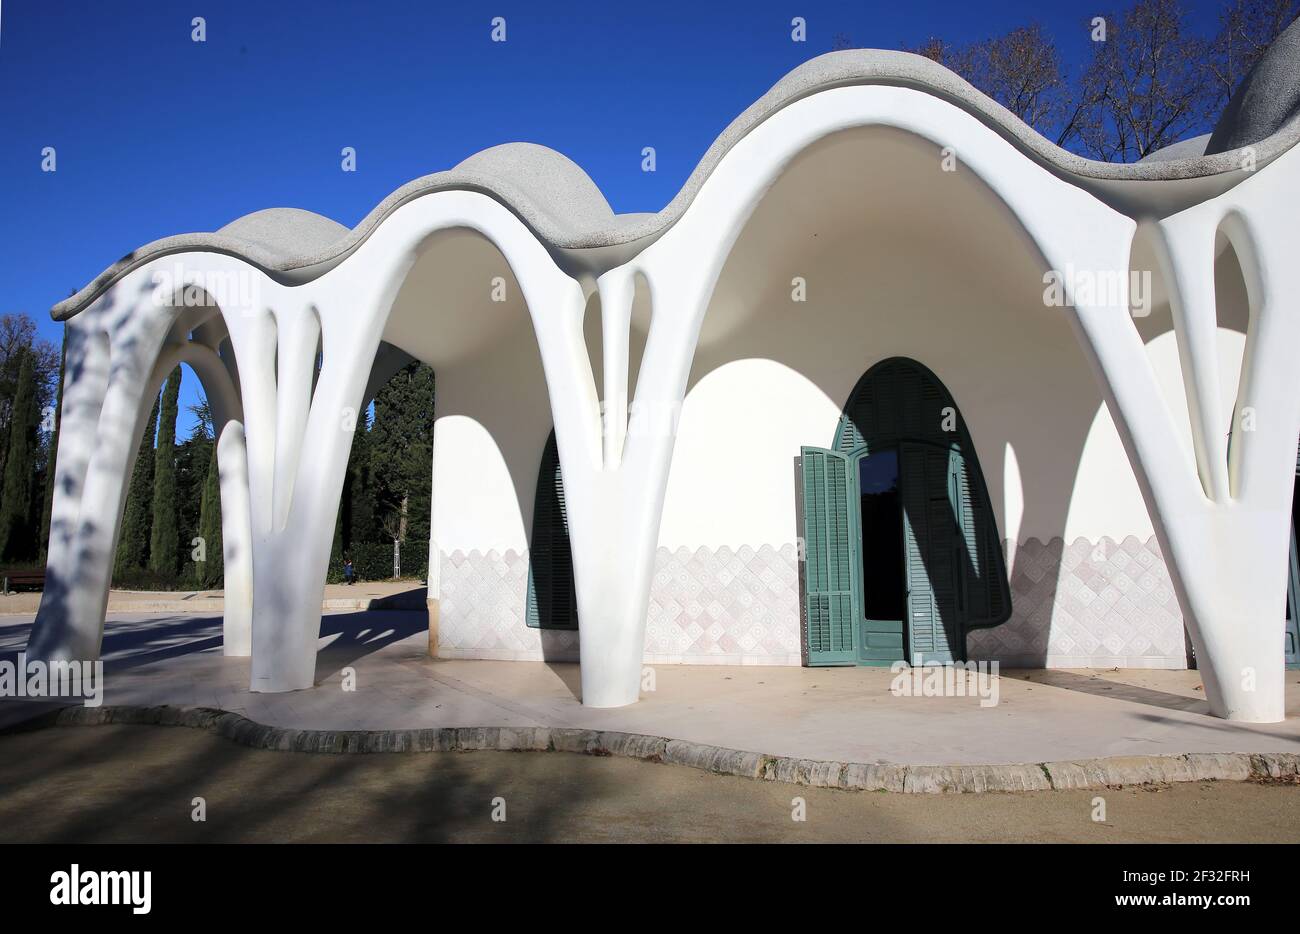 Masia Freixa ( 1907 ). Edificio modernista ispirato a Gaudí. Lluis Moncunill architetto. Parc de Sant Jordi, Terrassa, Catalogna. Spagna. Foto Stock